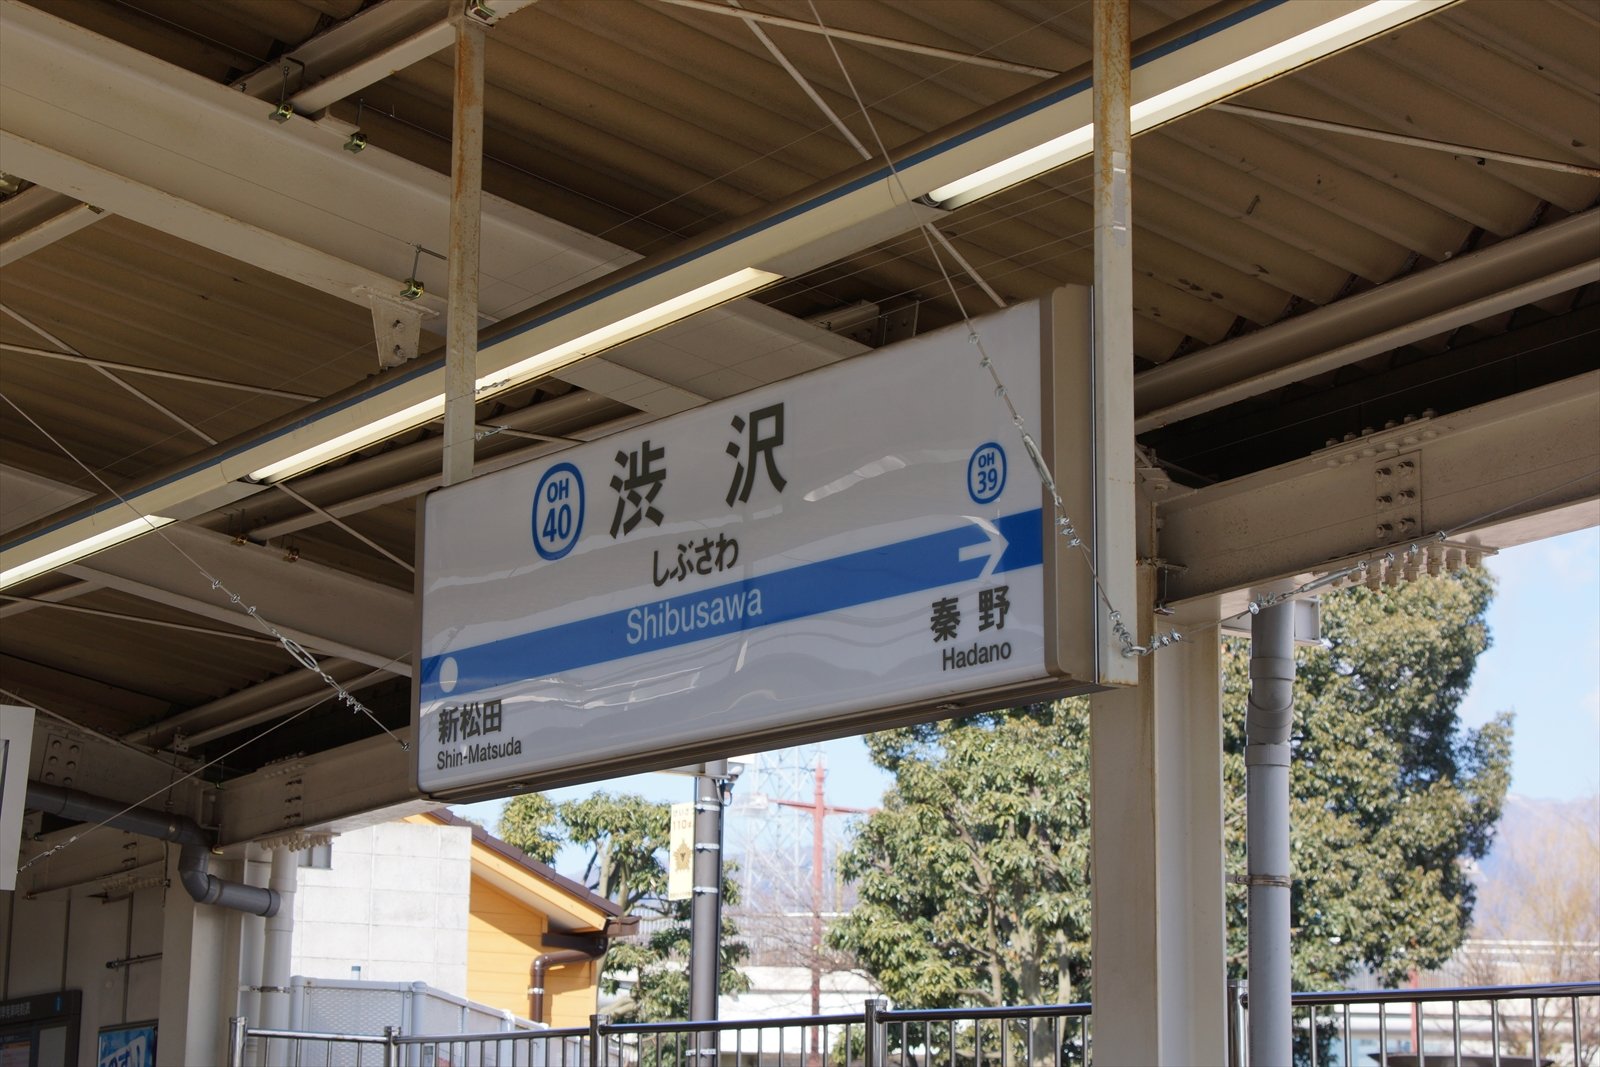 阪和線の沿線から 小田急線渋沢駅で 負けないで 揺れる想い の到着メロディーを収録する